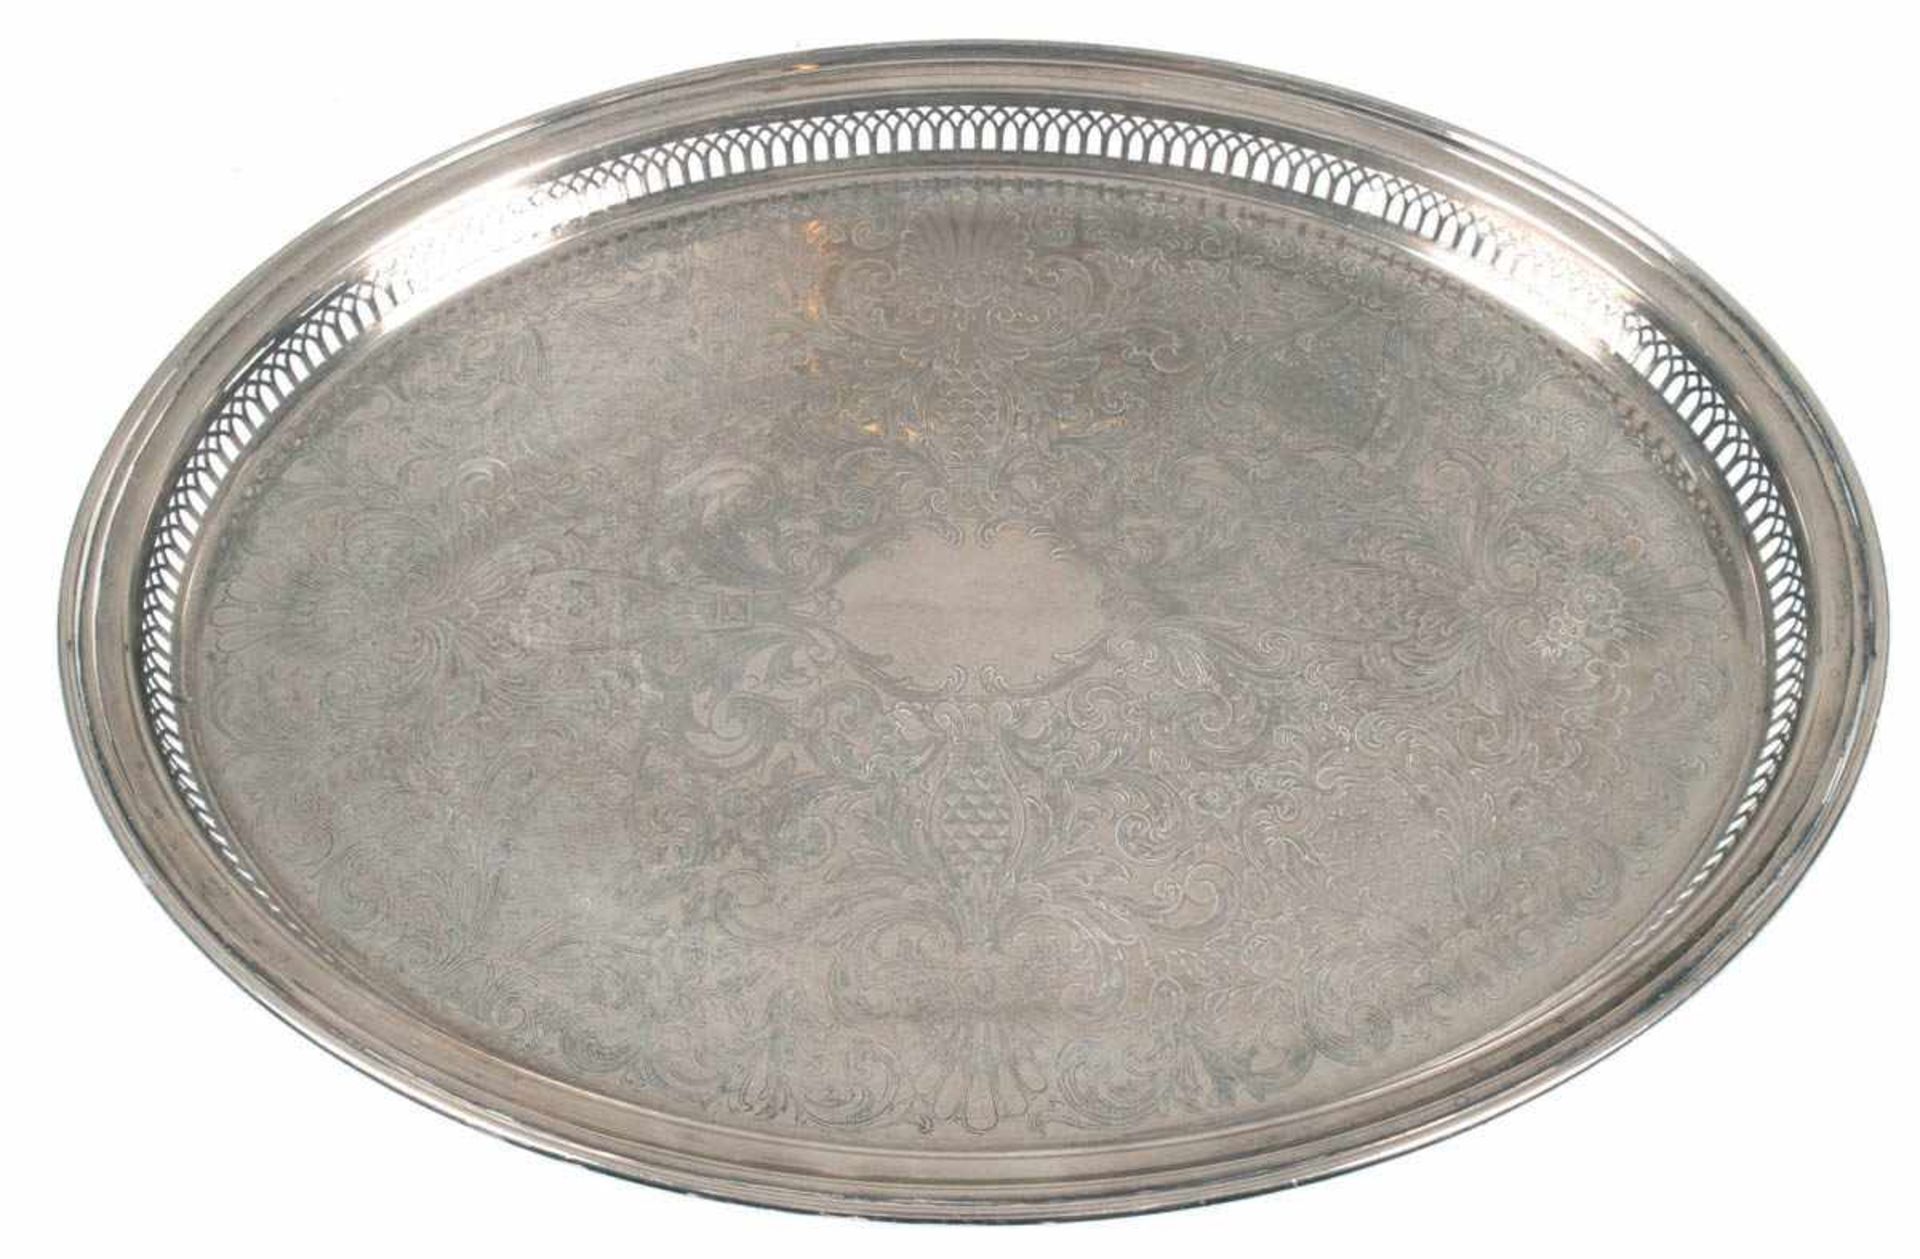 Tablett, England, versilbert, mit durchbrochenem Rand und floralem Dekor, L. 52 cm, B. 41cm- - -23.